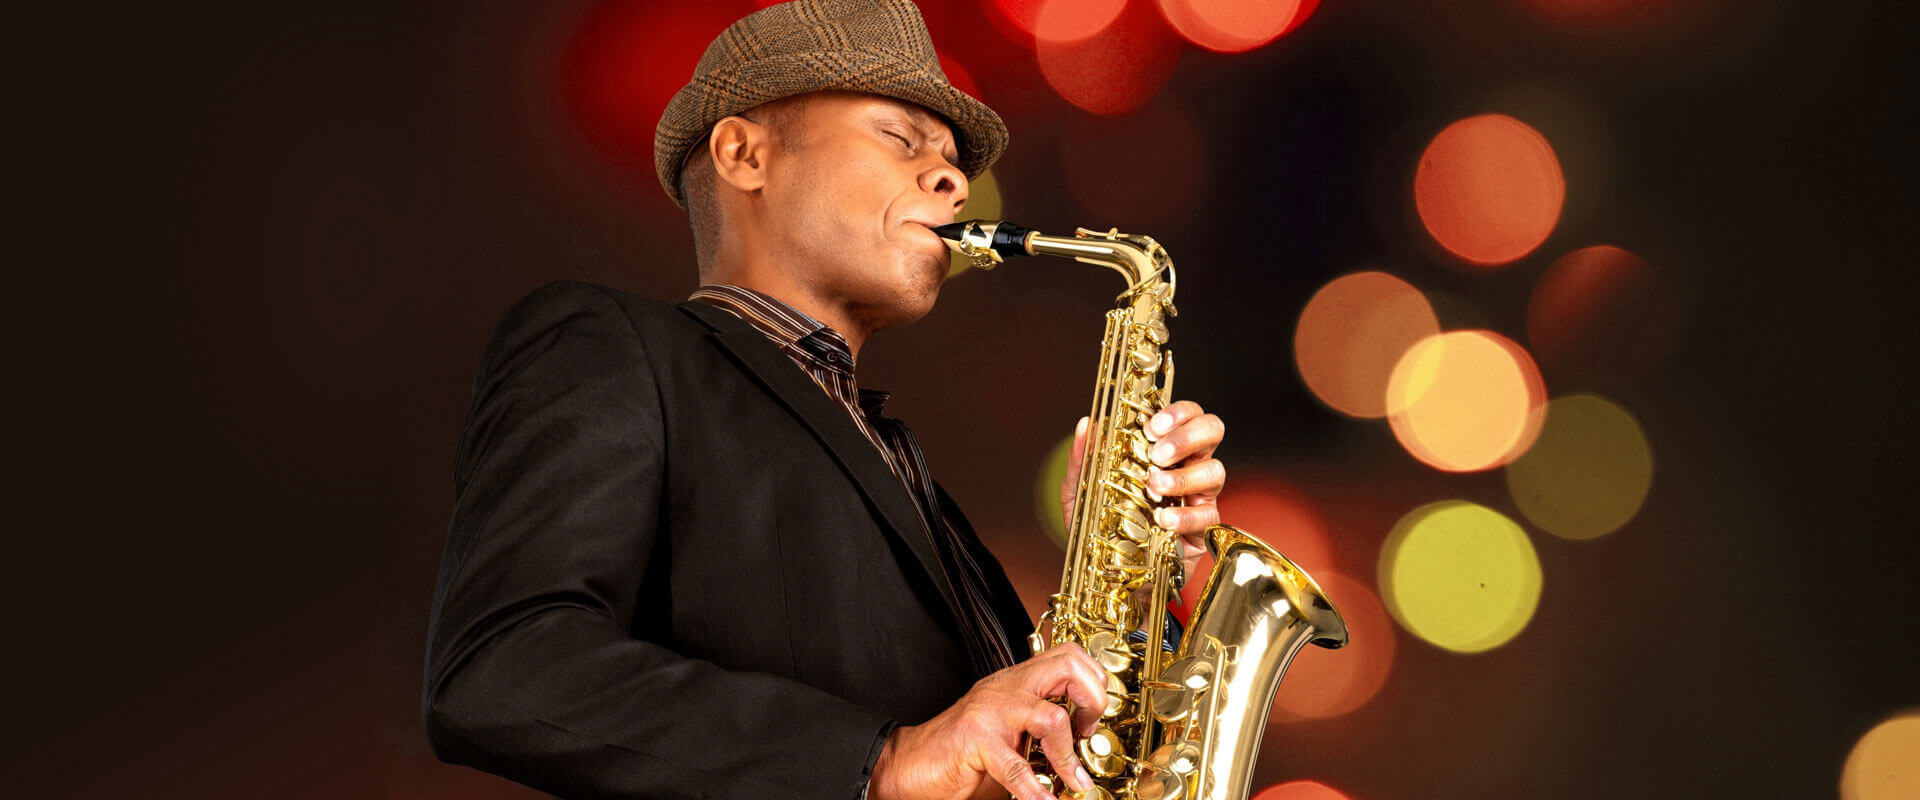 Saxophone Lessons Worthington, PA